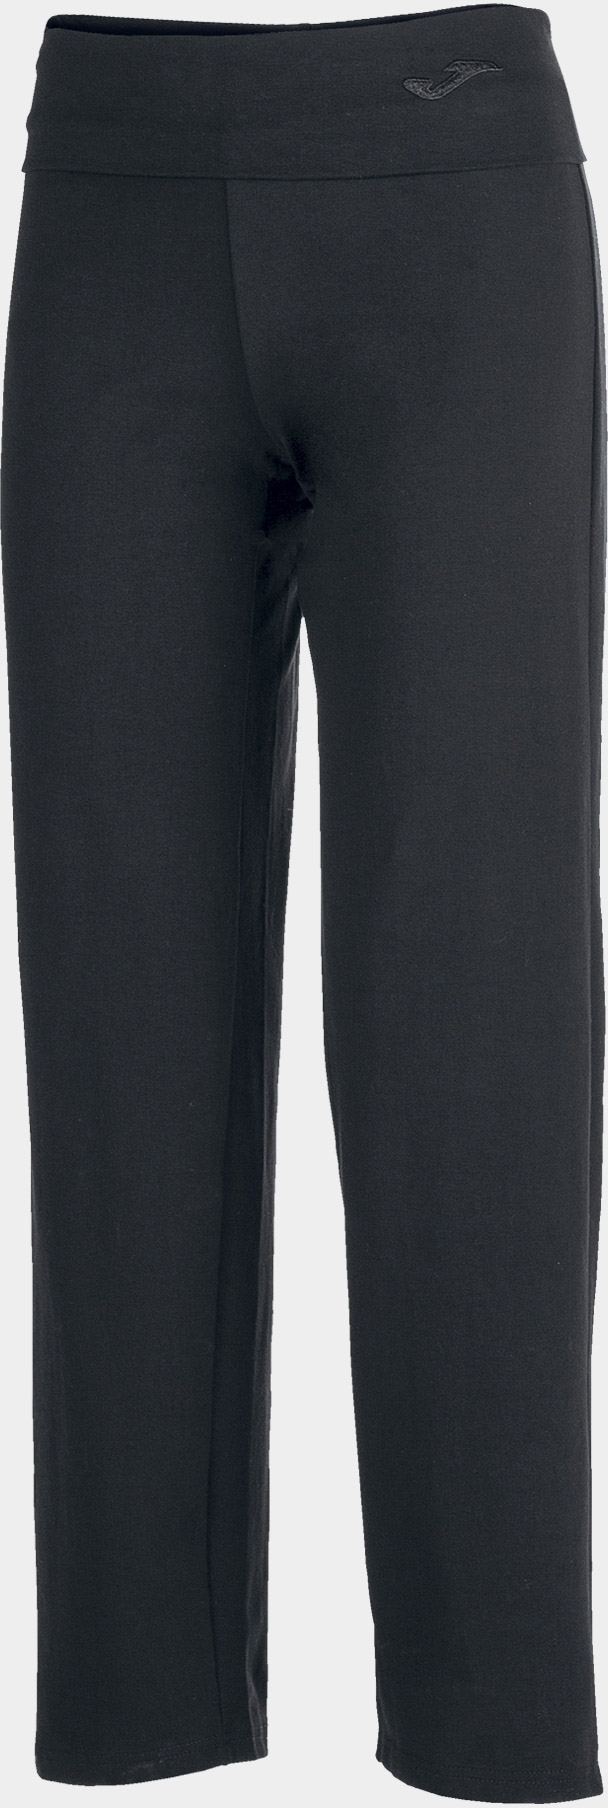 Dámské kalhoty JOMA Taro II Long Pants Black|S